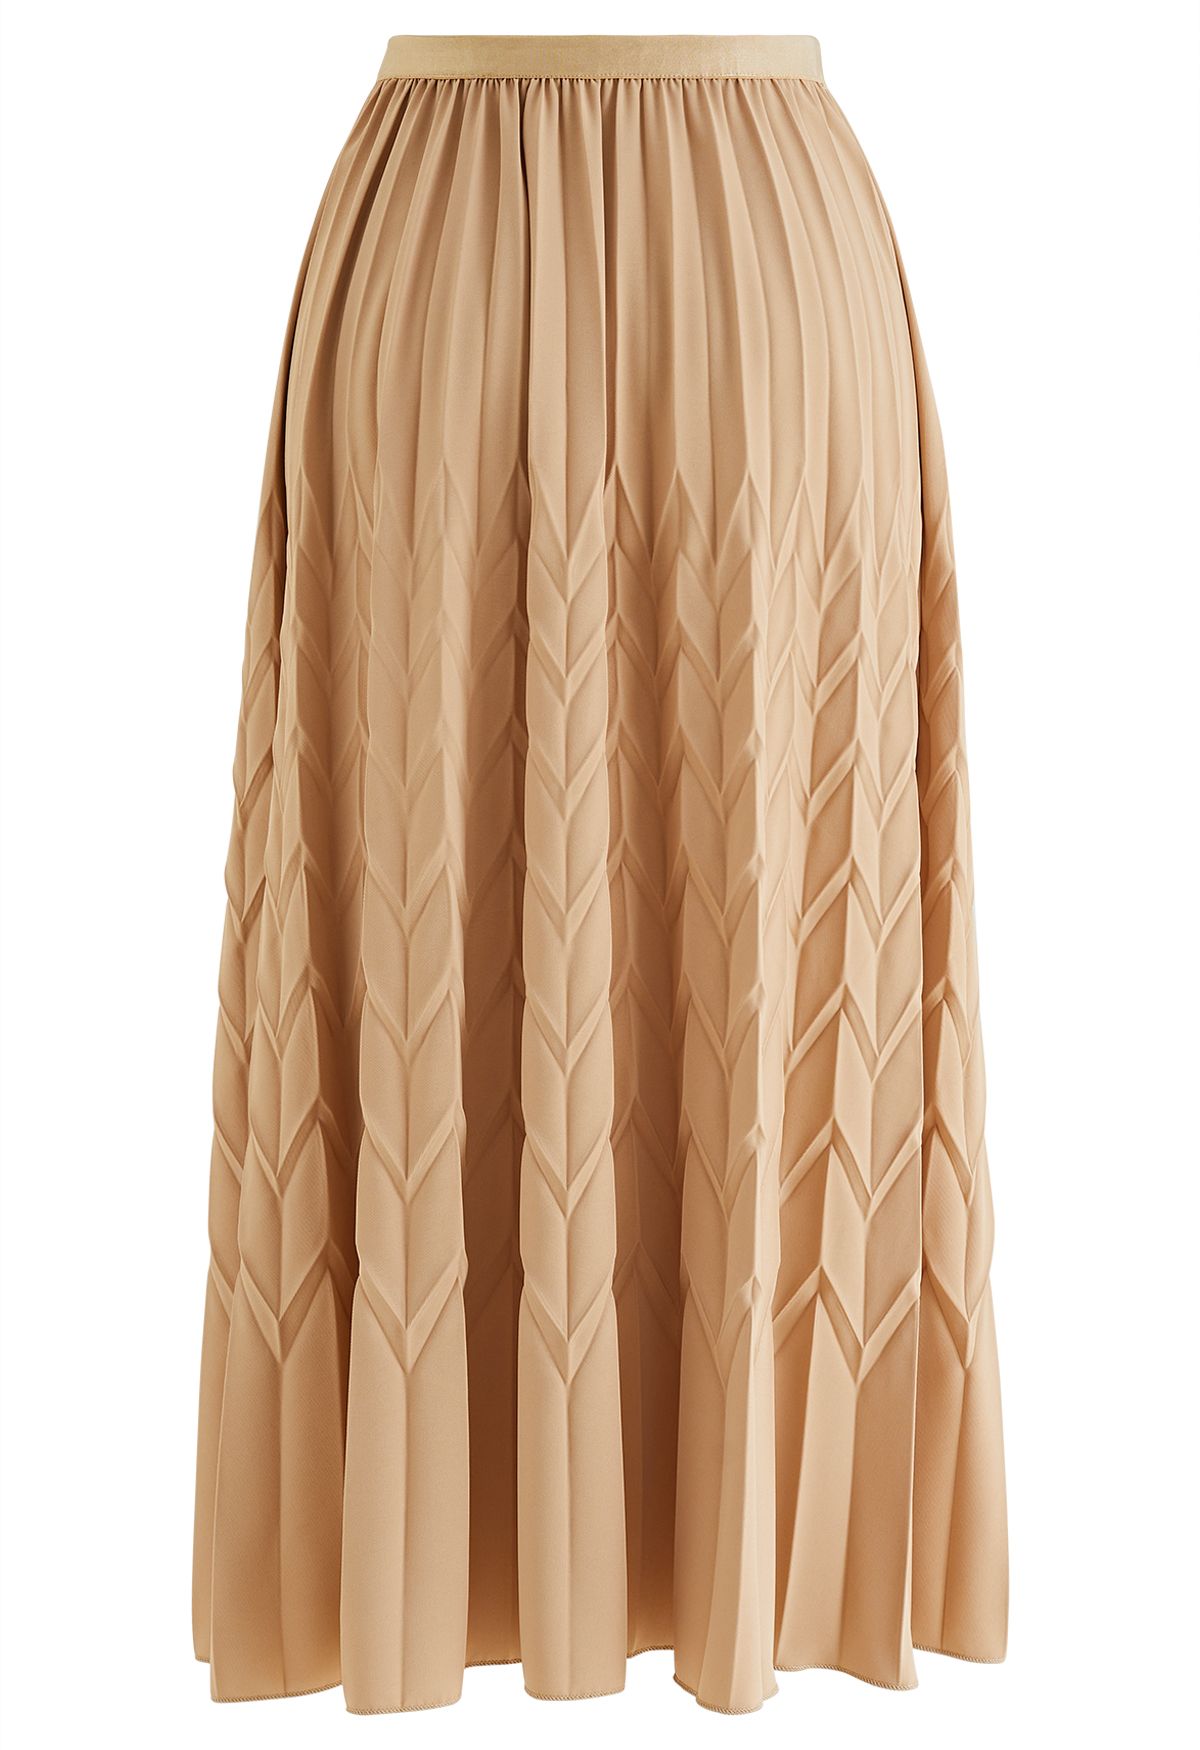 Falda midi plisada con relieve en zigzag en tostado